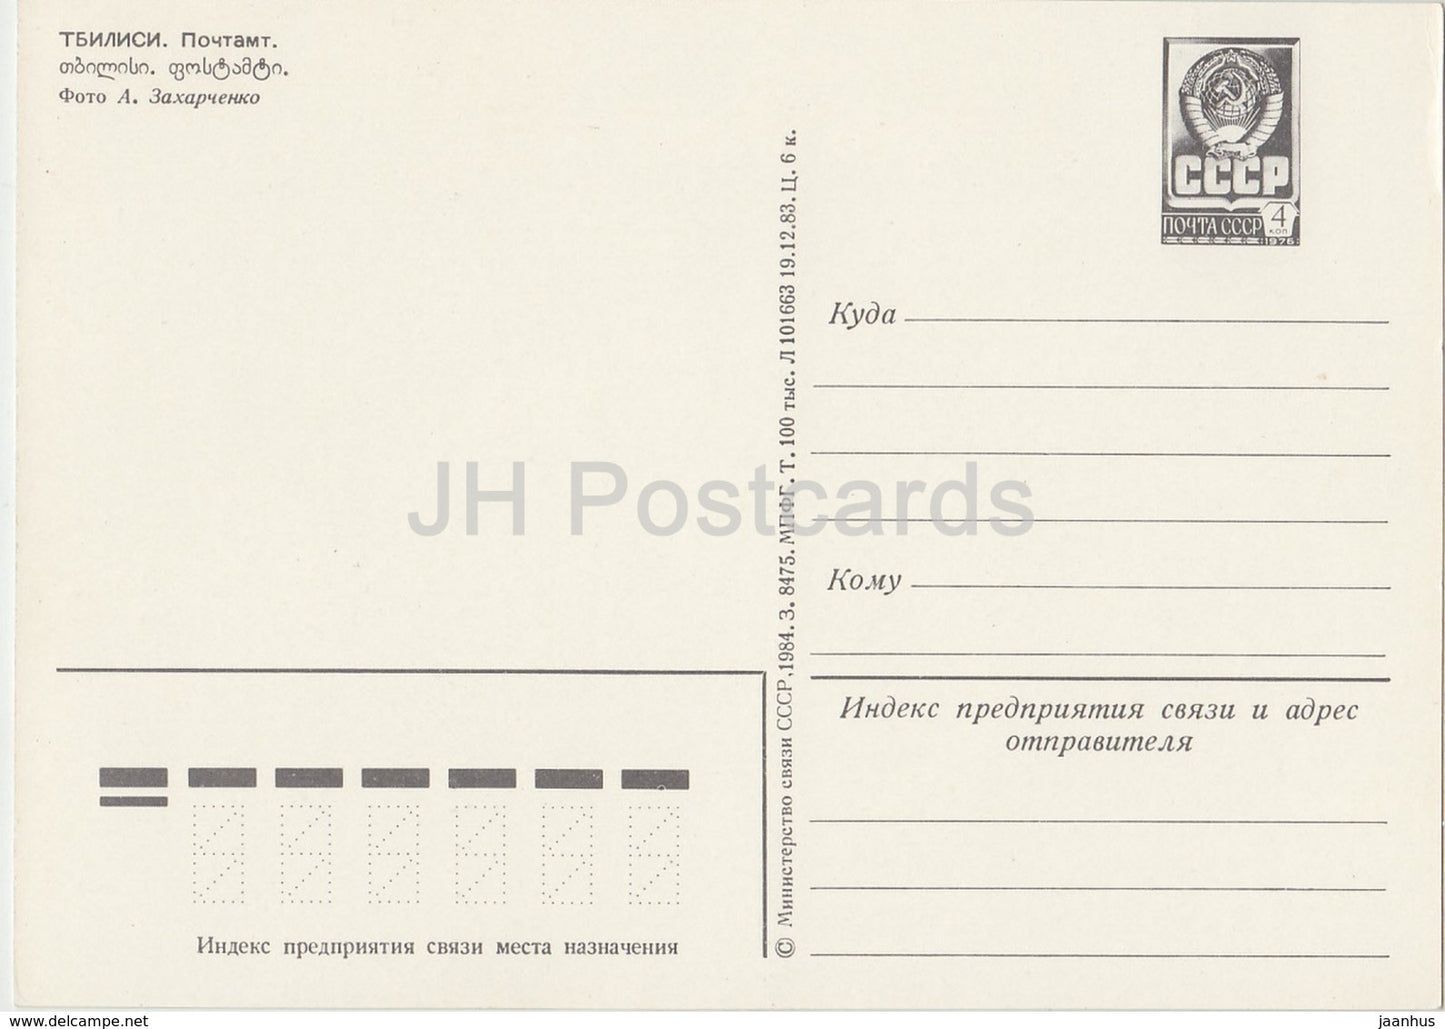 Tiflis - Postamt - Auto Zhiguli - Ganzsache - 1984 - Georgien UdSSR - unbenutzt